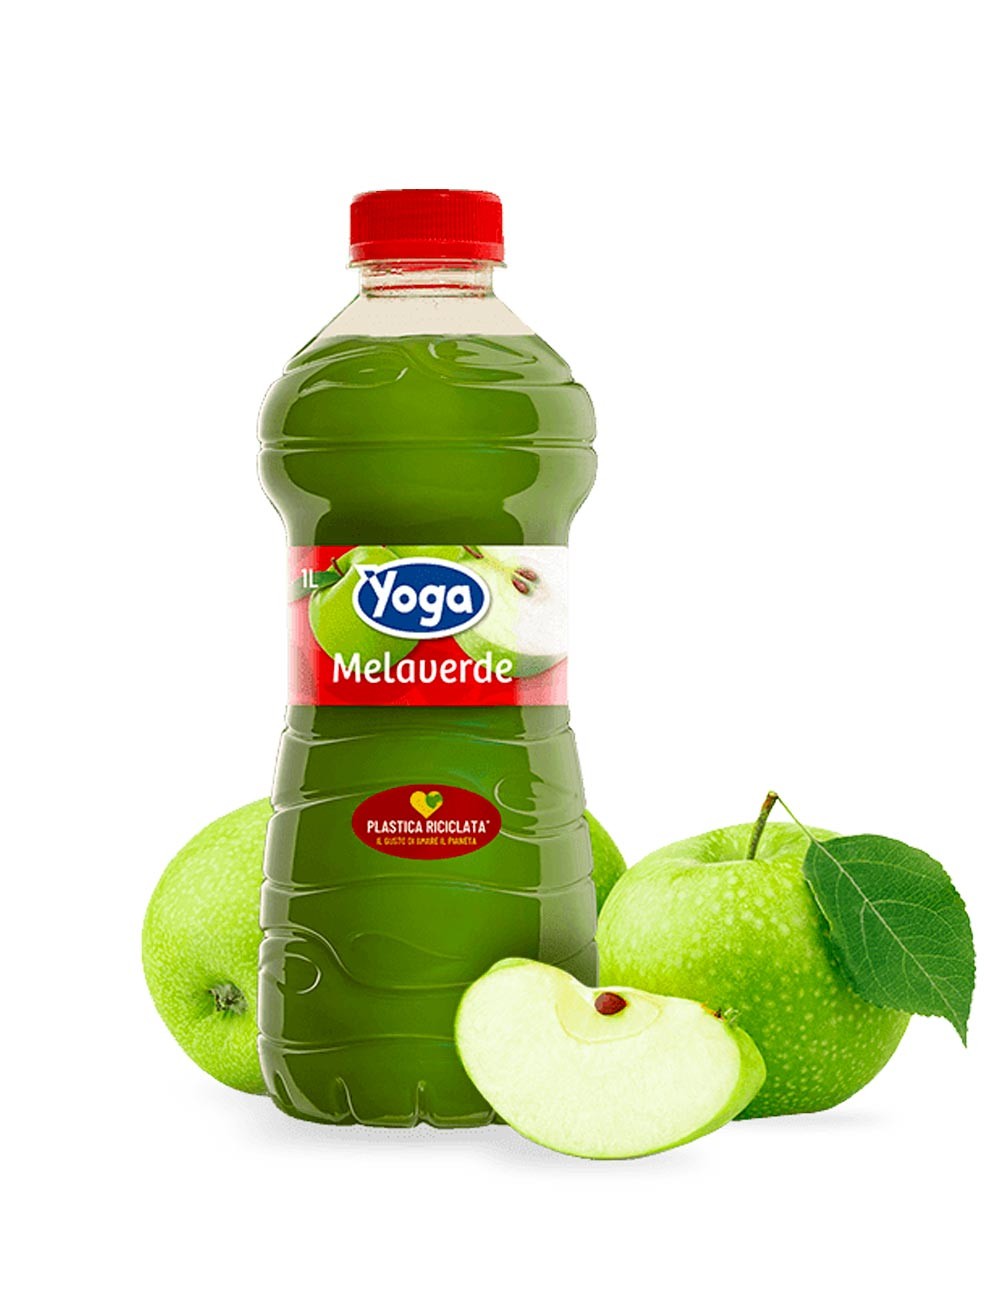 Grüner Apfel Yoga Saft 1L 6 Stk. ab